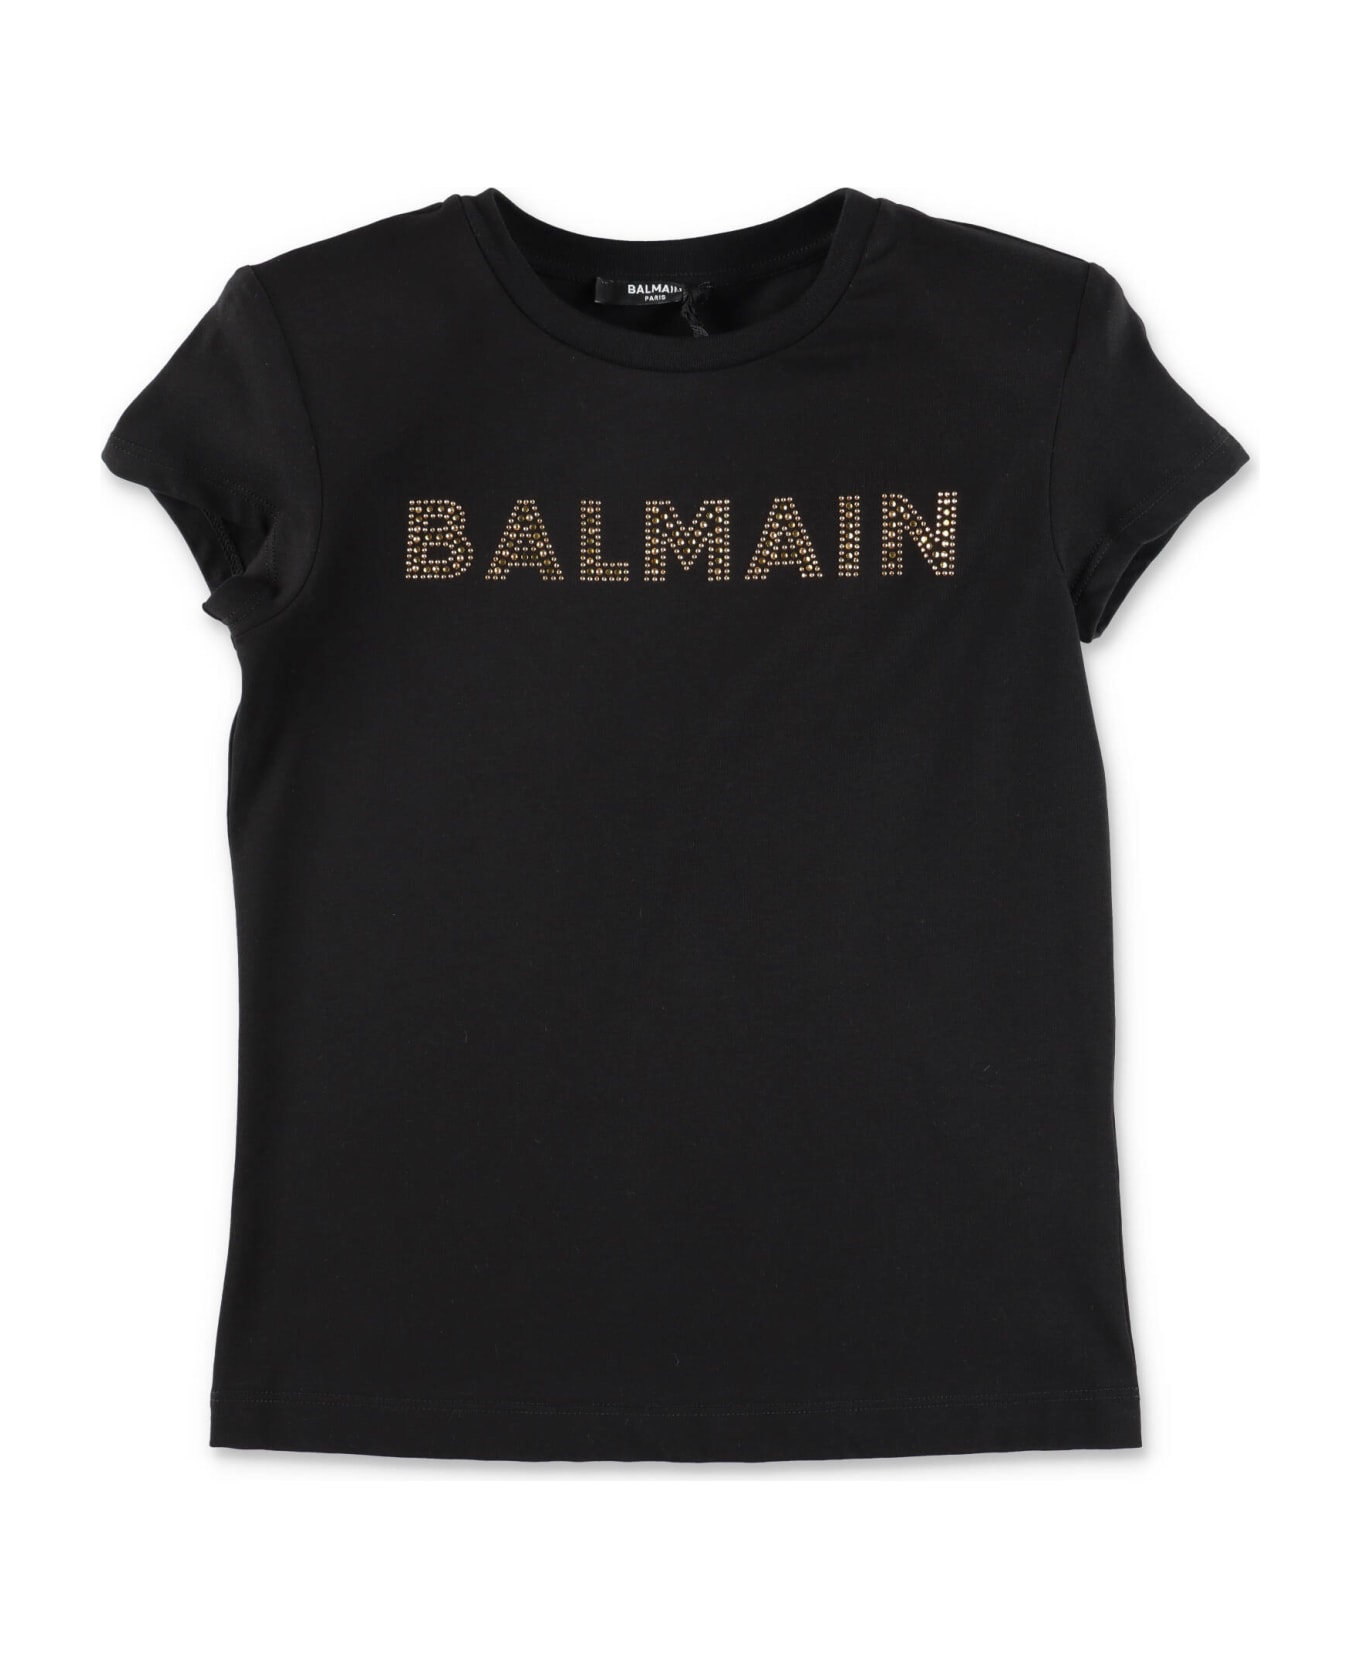 Balmain T-shirt Nera In Jersey Di Cotone Bambina - Nero Tシャツ＆ポロシャツ